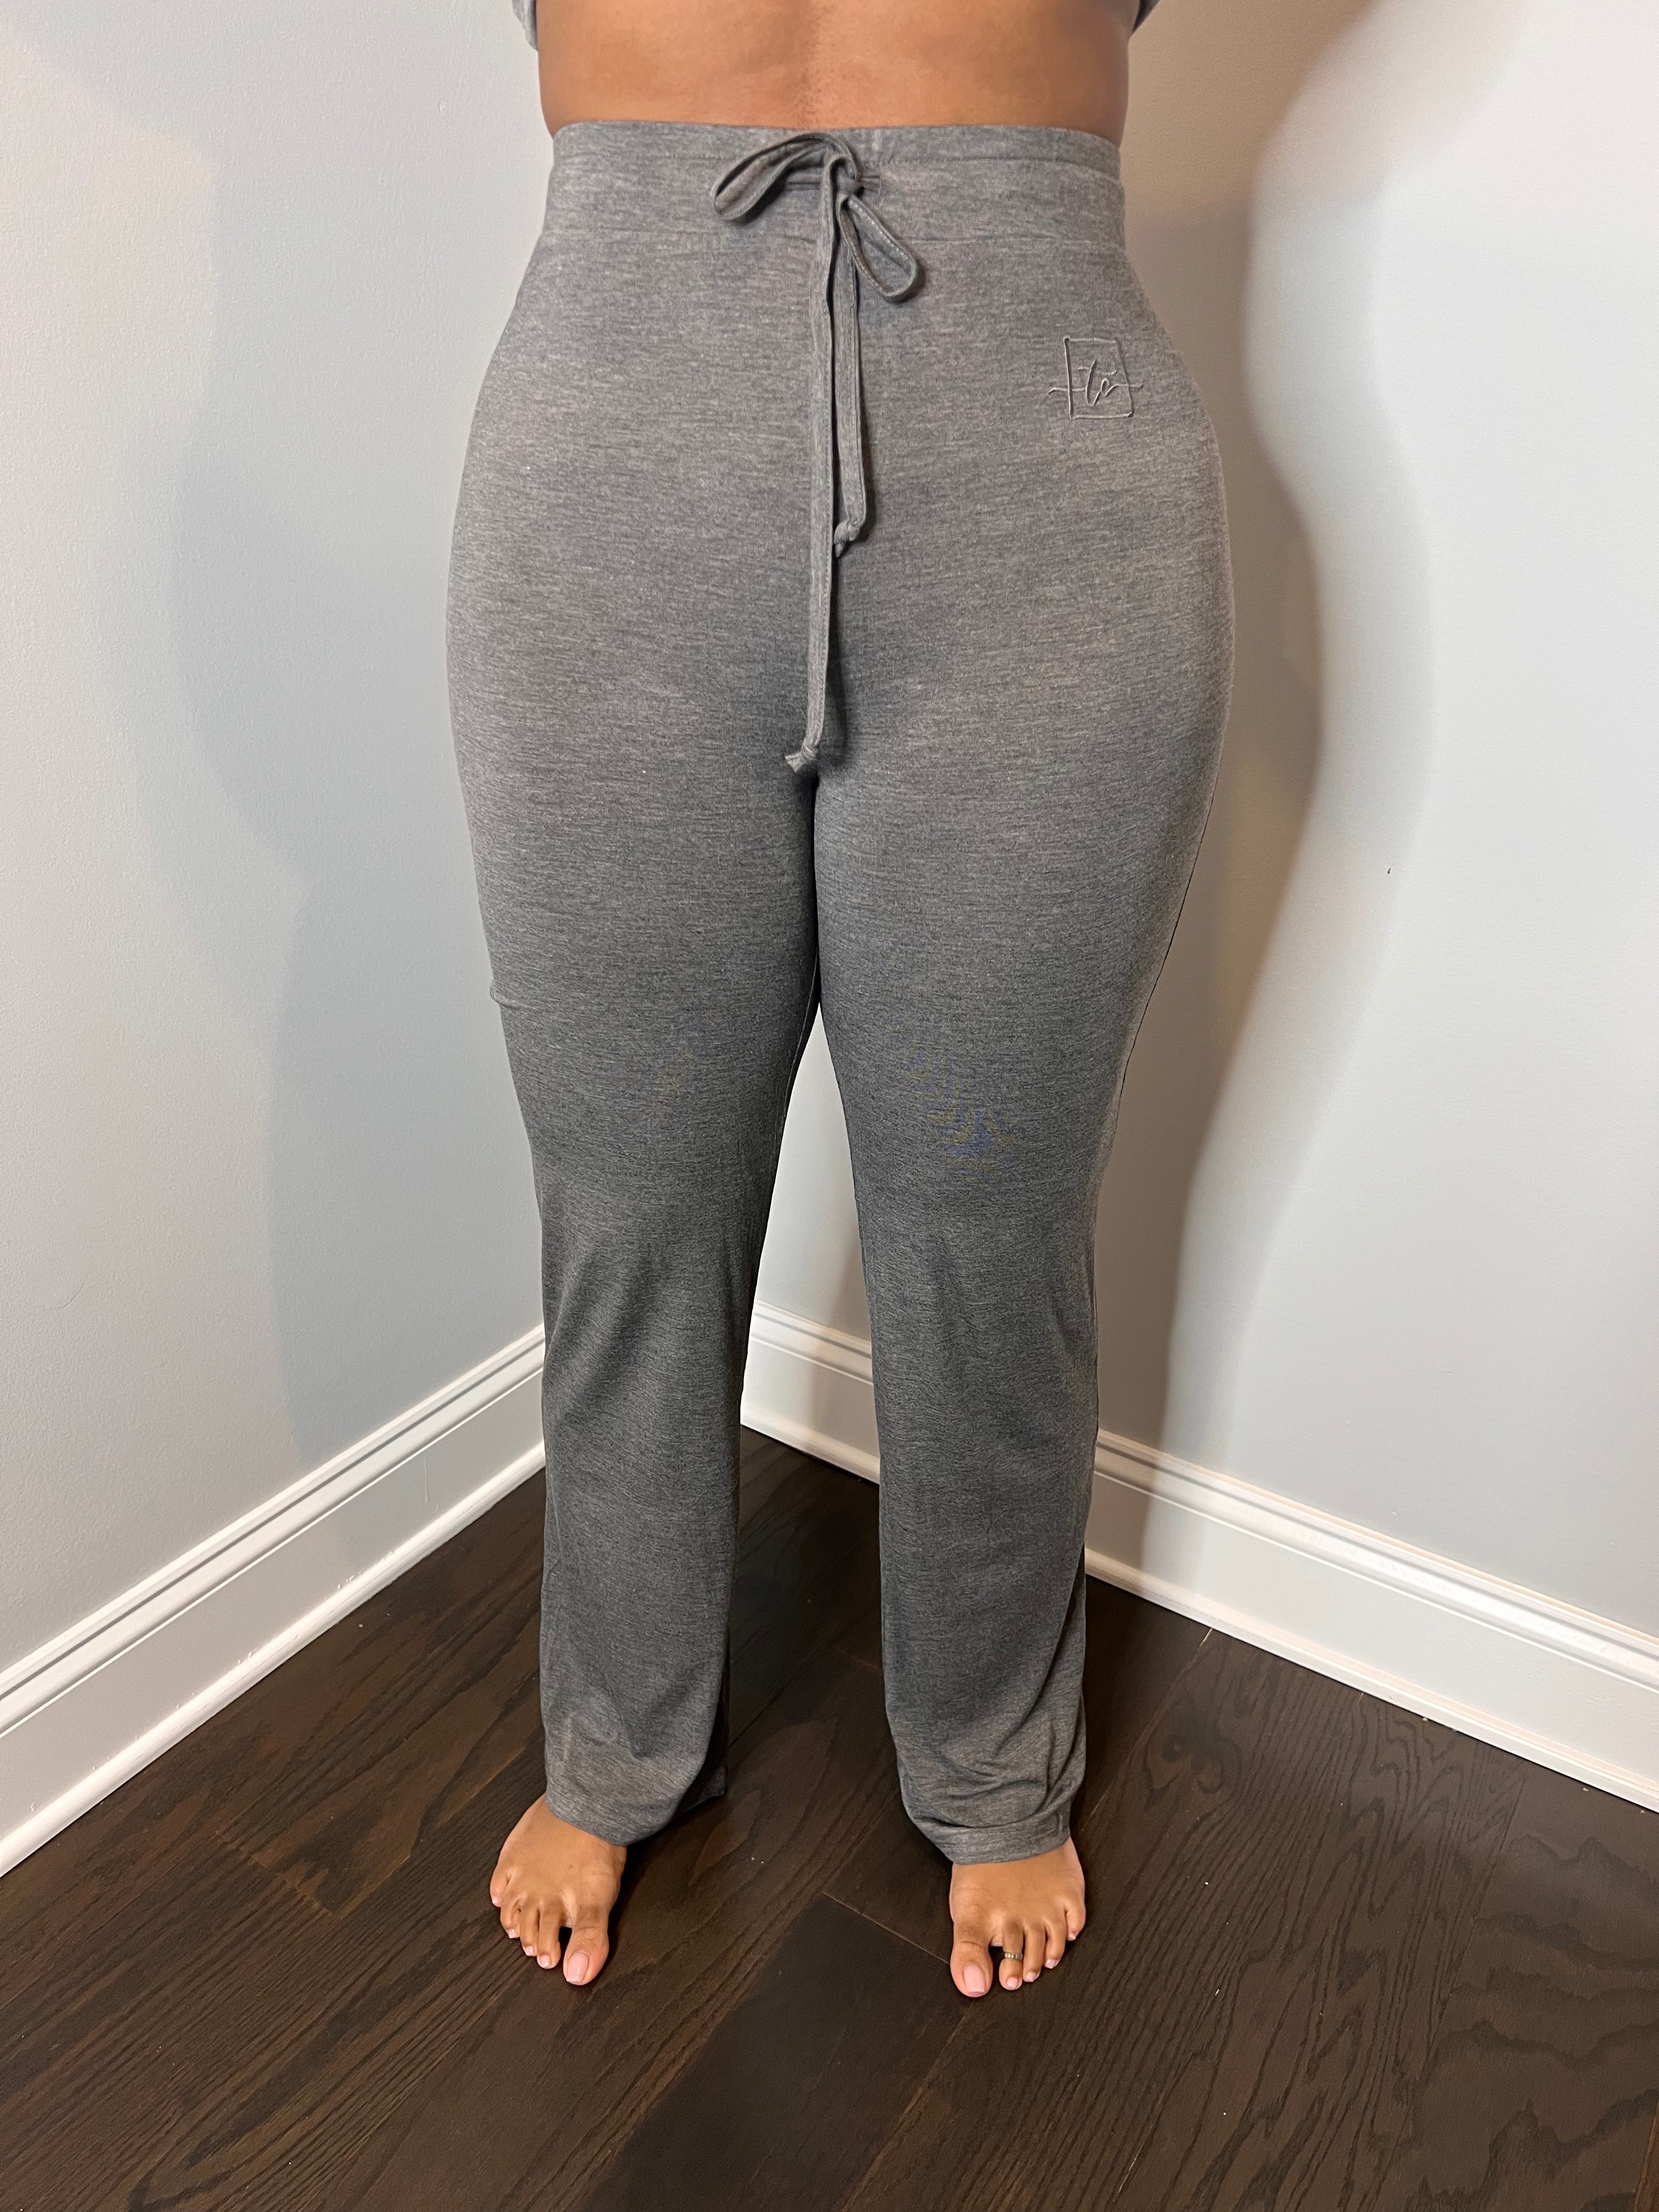 Women's Gray Stylish Lounge Pants 